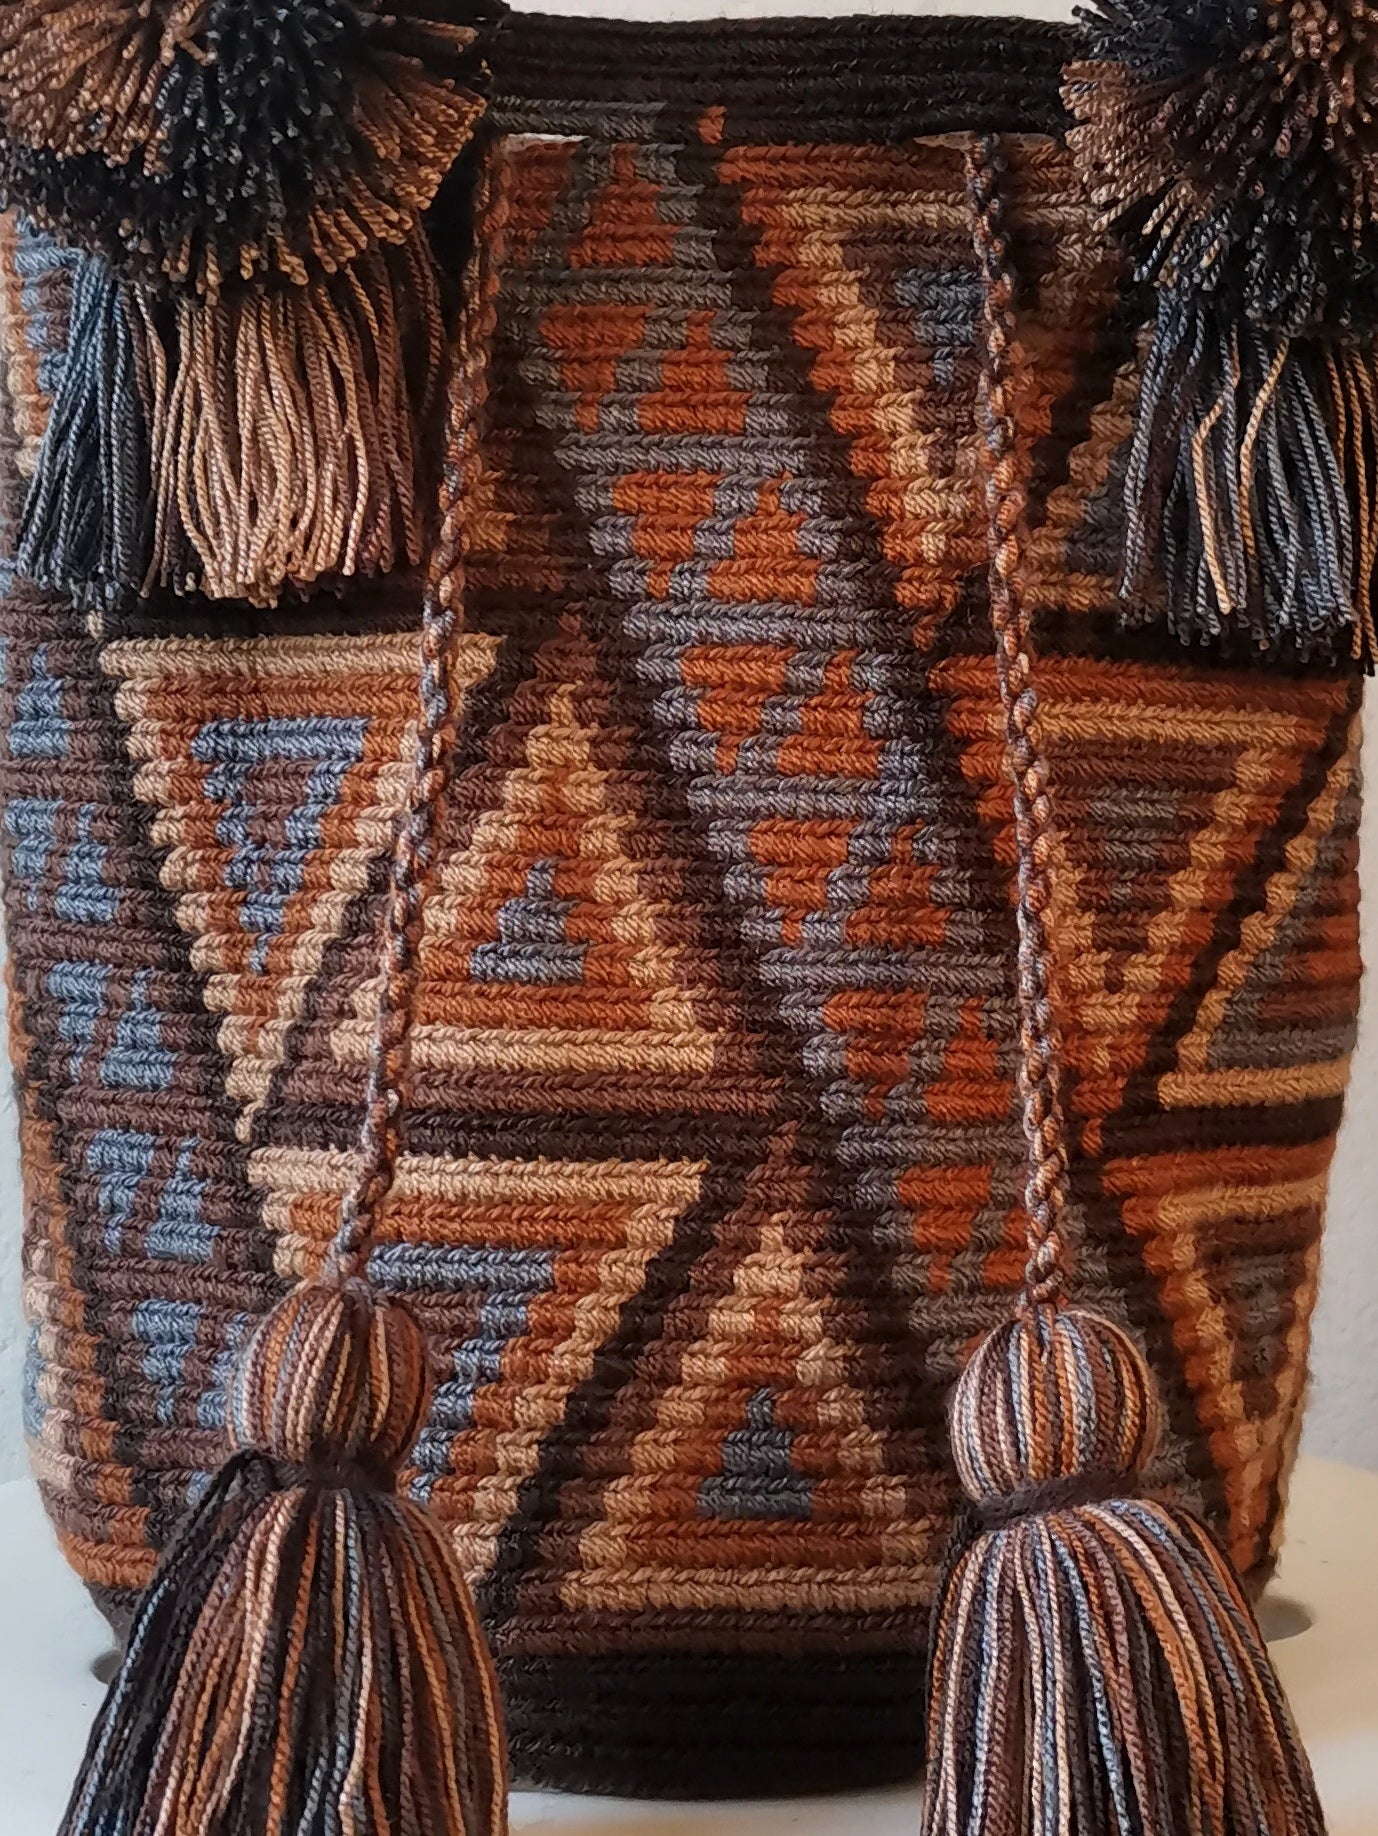 Brown and gray M mochila handbag